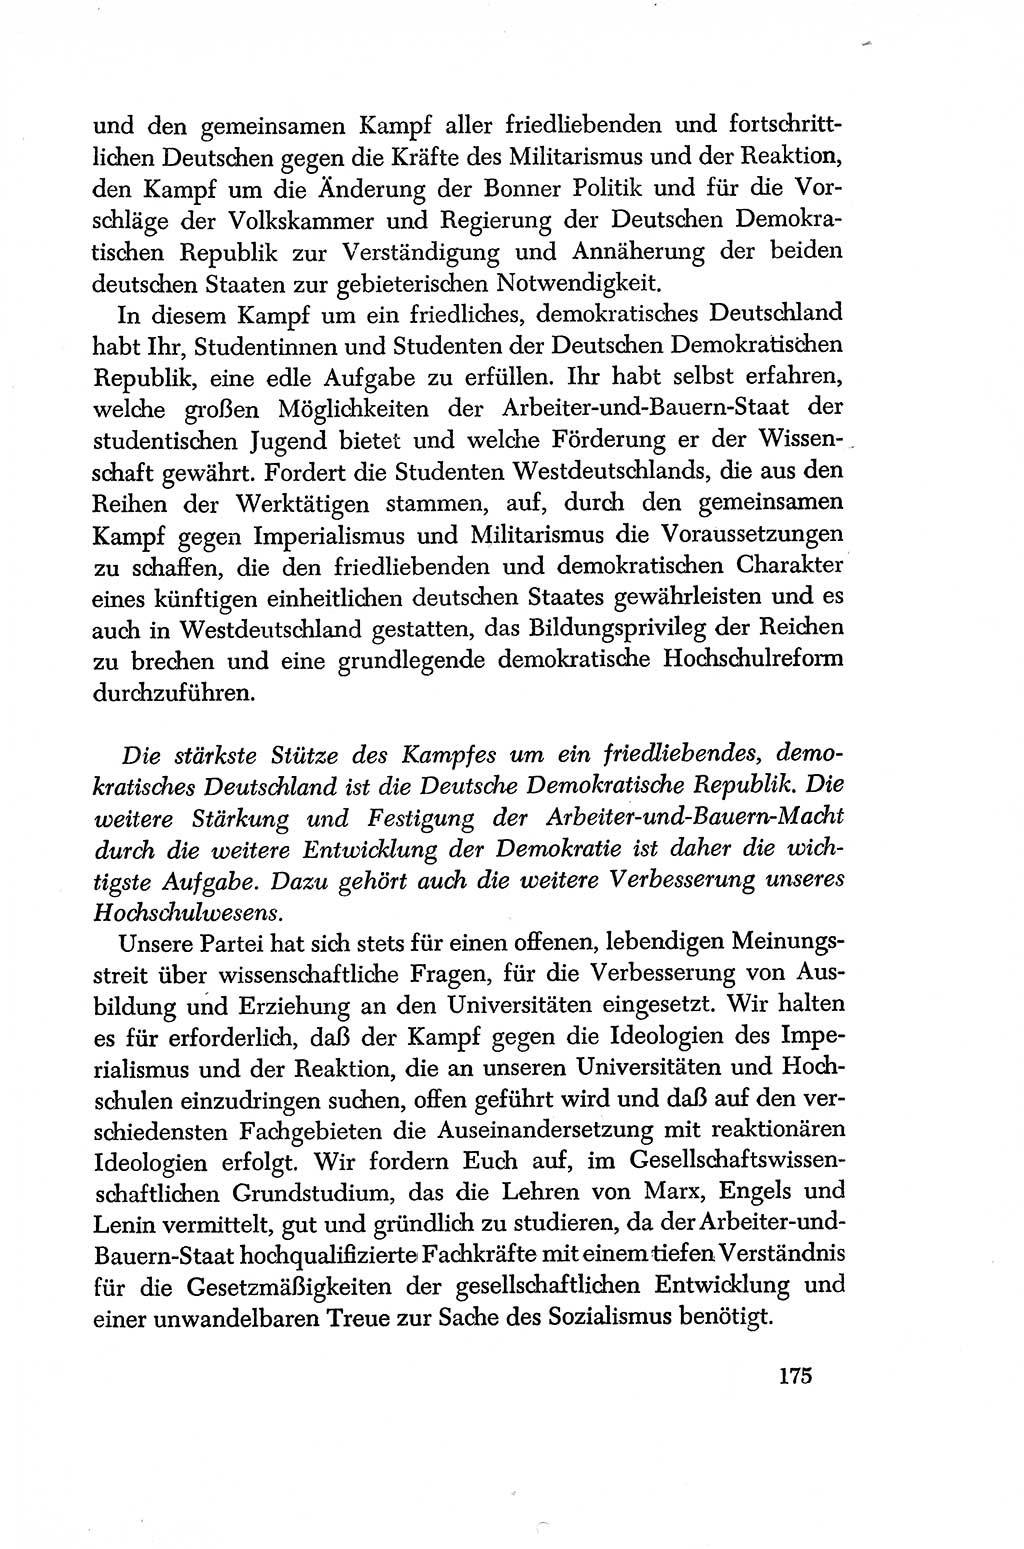 Dokumente der Sozialistischen Einheitspartei Deutschlands (SED) [Deutsche Demokratische Republik (DDR)] 1956-1957, Seite 175 (Dok. SED DDR 1956-1957, S. 175)